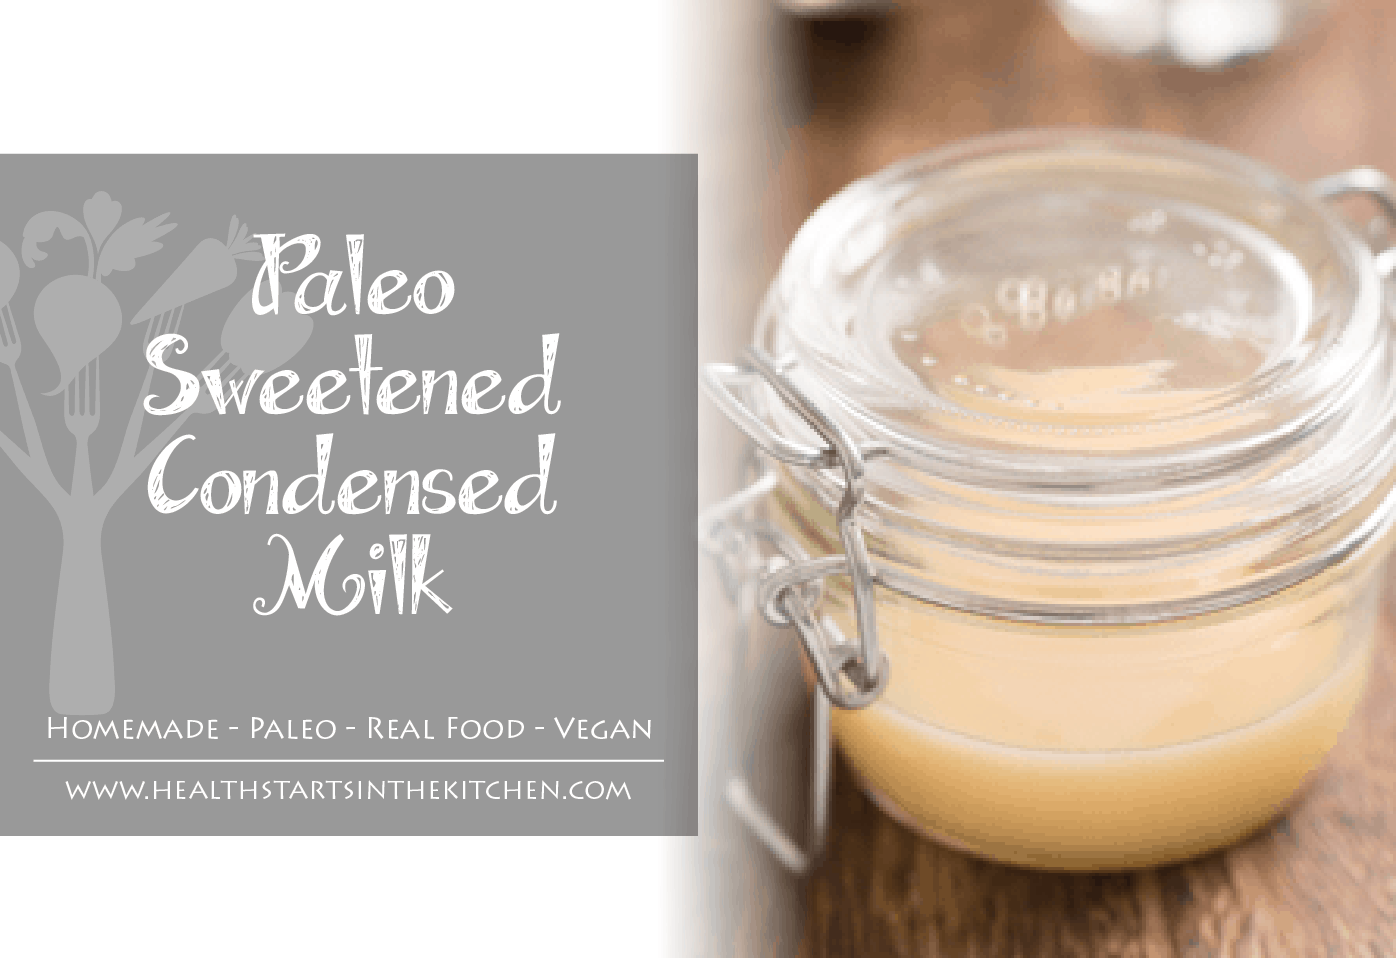 Paleo Sweetened Condensed Milk - Real Food - Vegan - Vegetarian - Homemade & Healthy